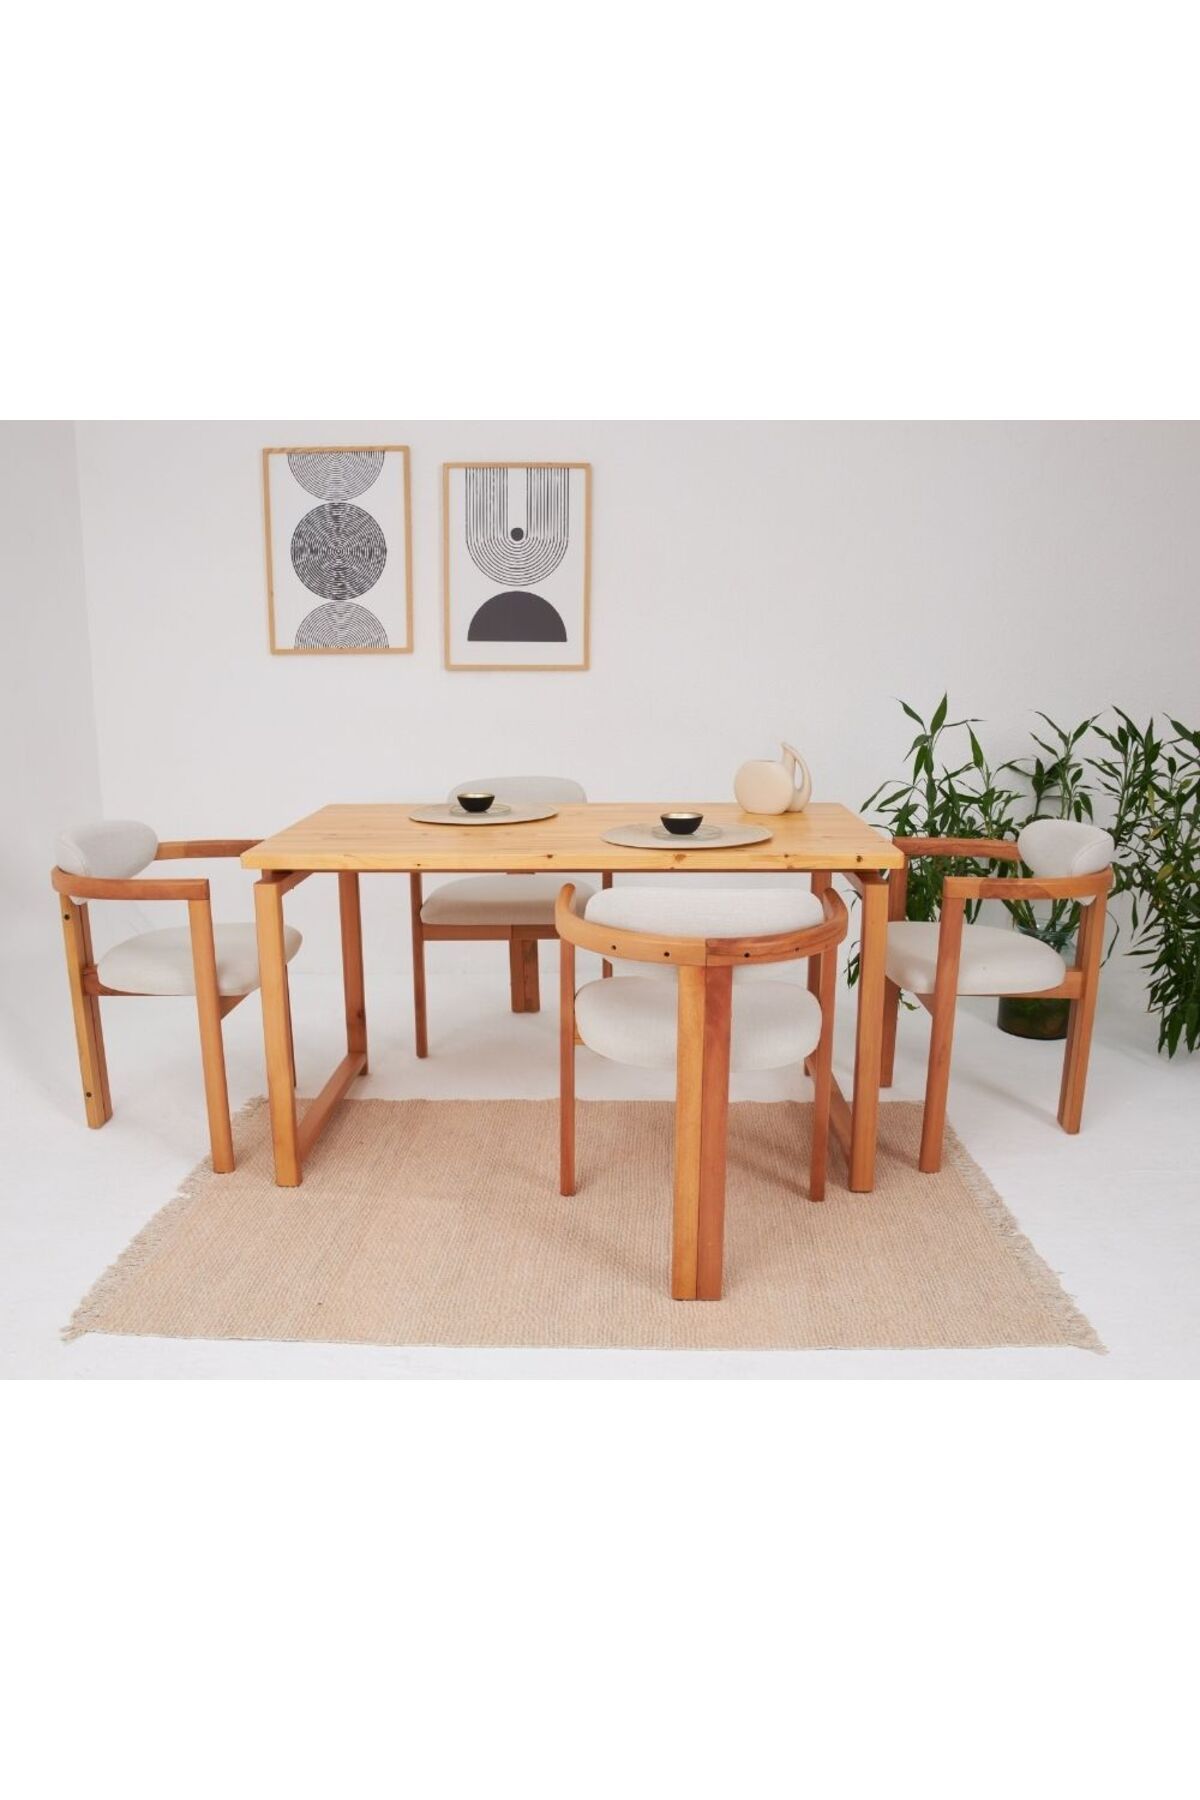 AVOKADO MOBİLYA Cheri Iskandinav Meşe Iskelet 4 Sandalye 1 Masa Salon Mutfak Masa Takımı